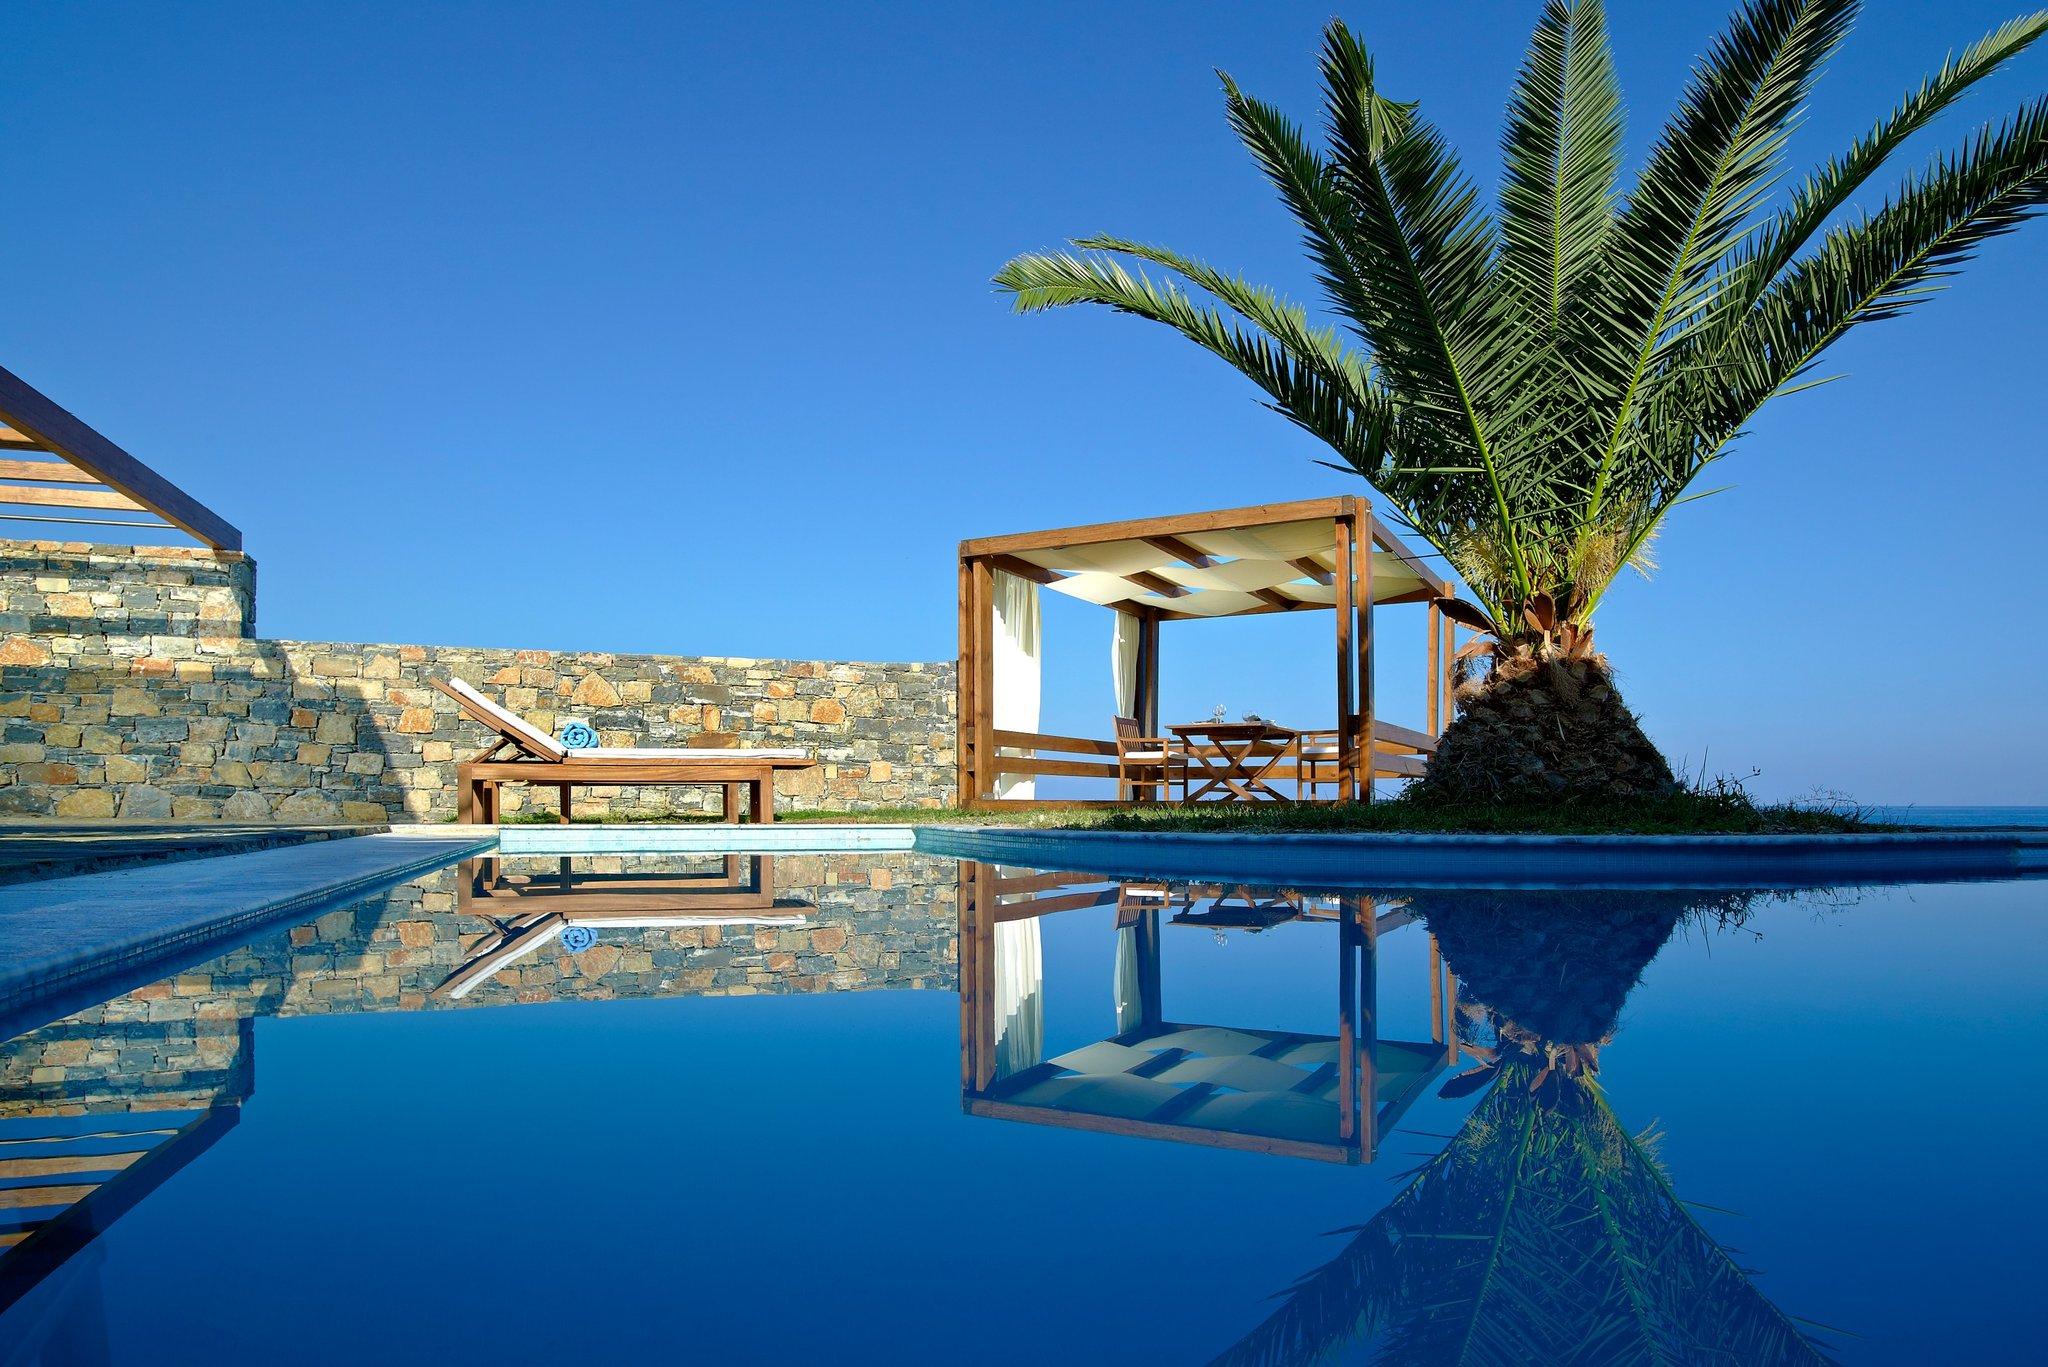 St. Nicolas Bay Resort Hotel & Villas in Crete, GR